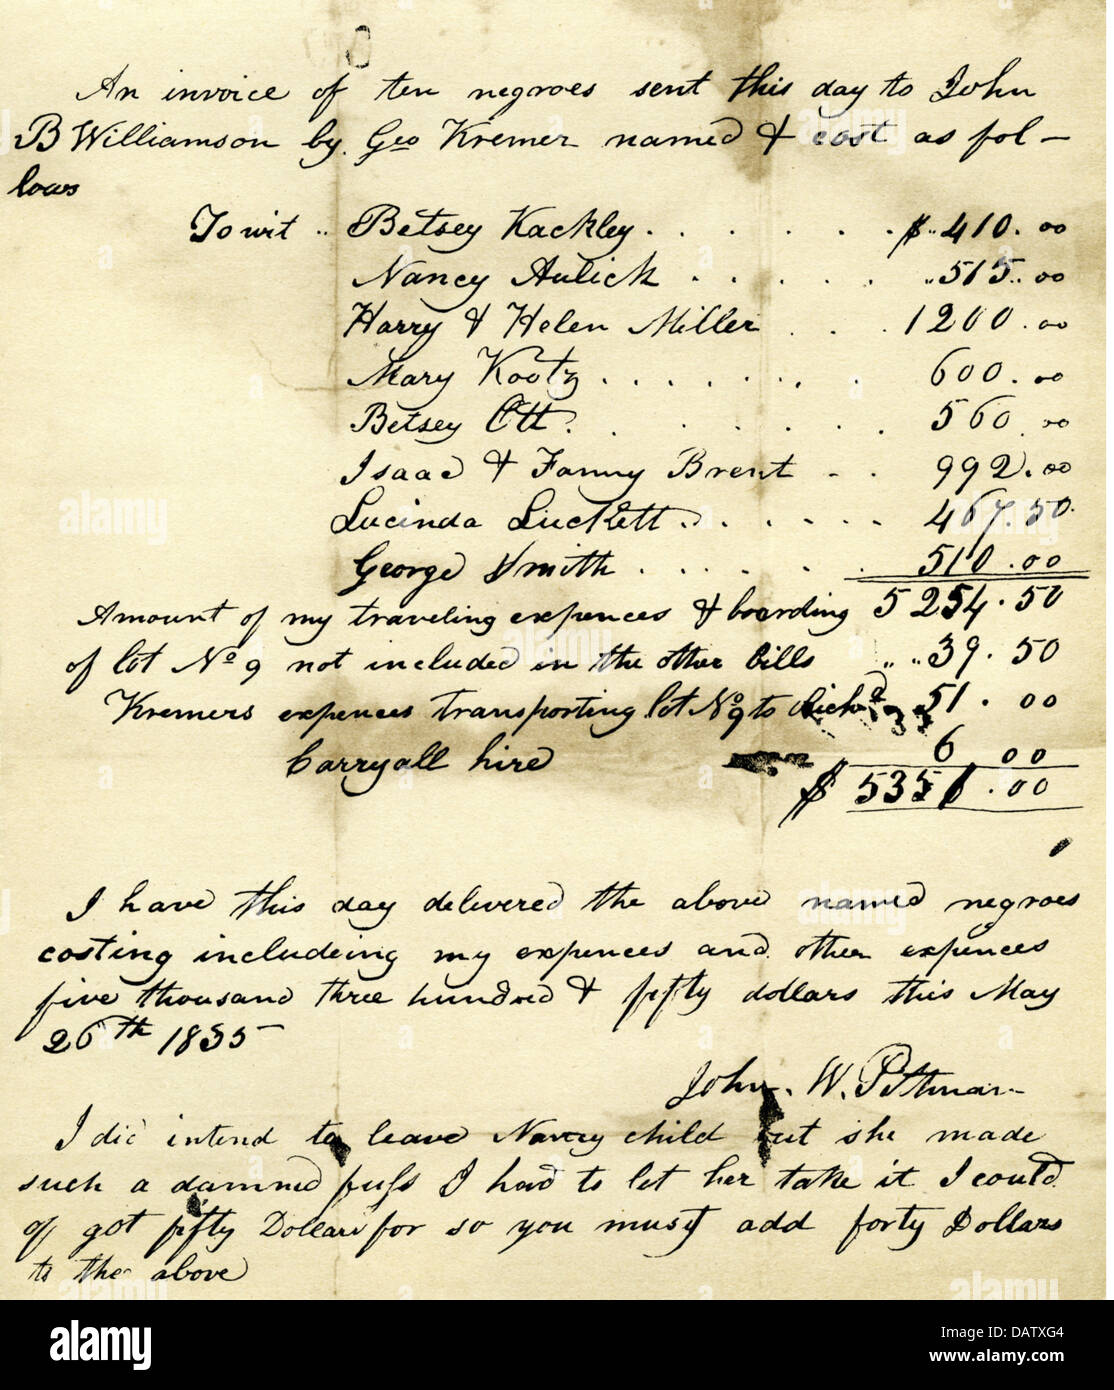 Esclavitud, trata de esclavos, proyecto de ley de John W. Pettman, transporte de diez esclavos de color de John B. Williamson a George Kremer, 26.5.1835, Derechos adicionales-claros-no disponible Foto de stock